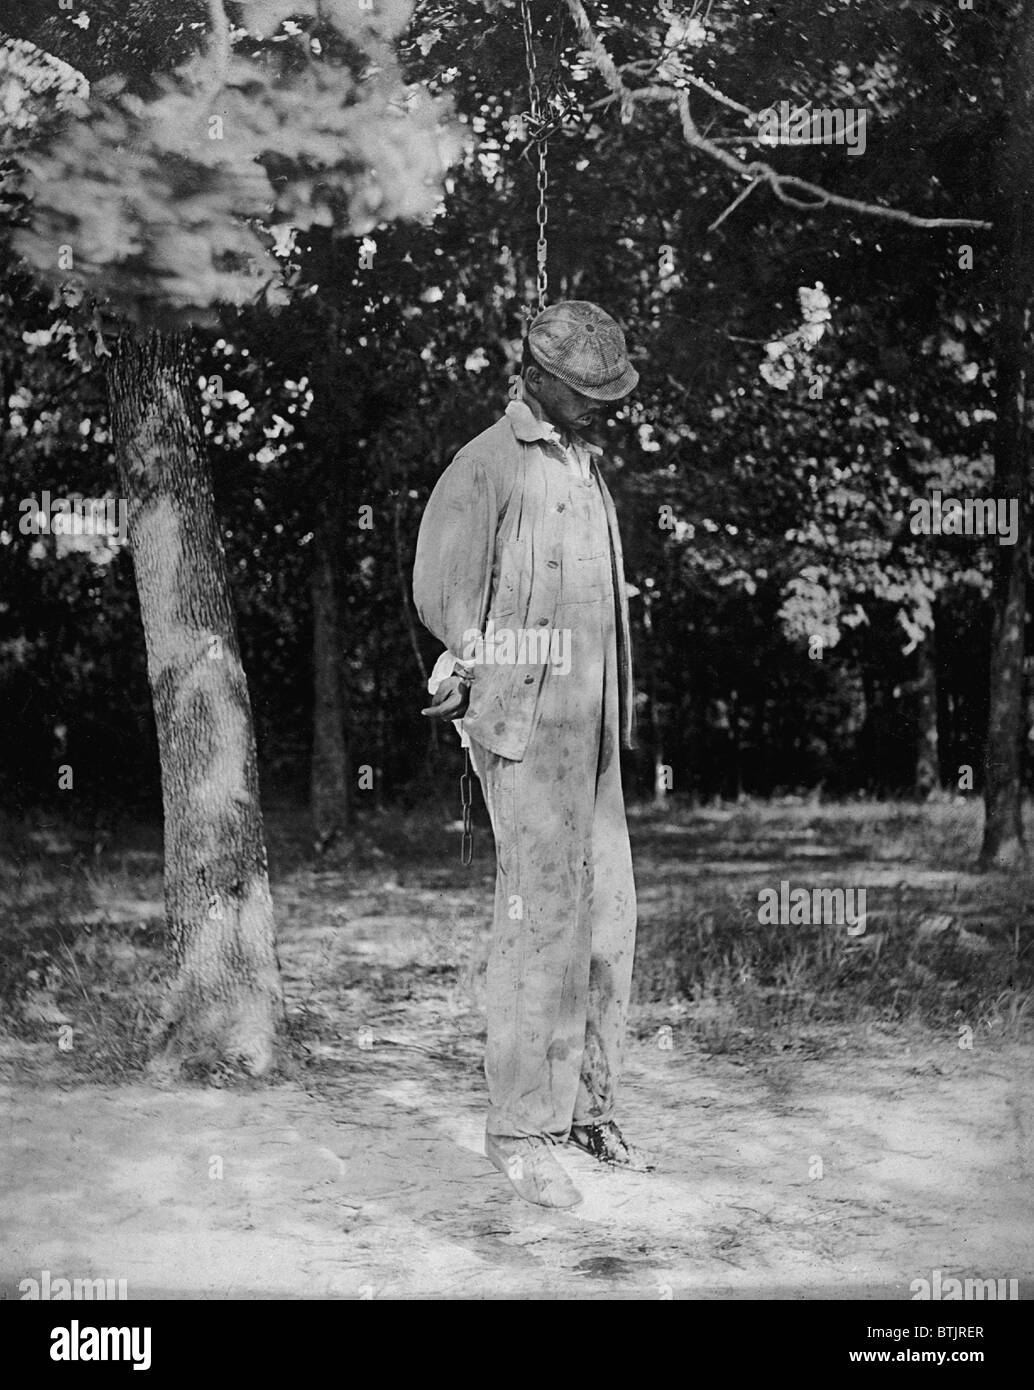 Anonyme afroamerikanische lynchen Opfer von 1925. Stockfoto